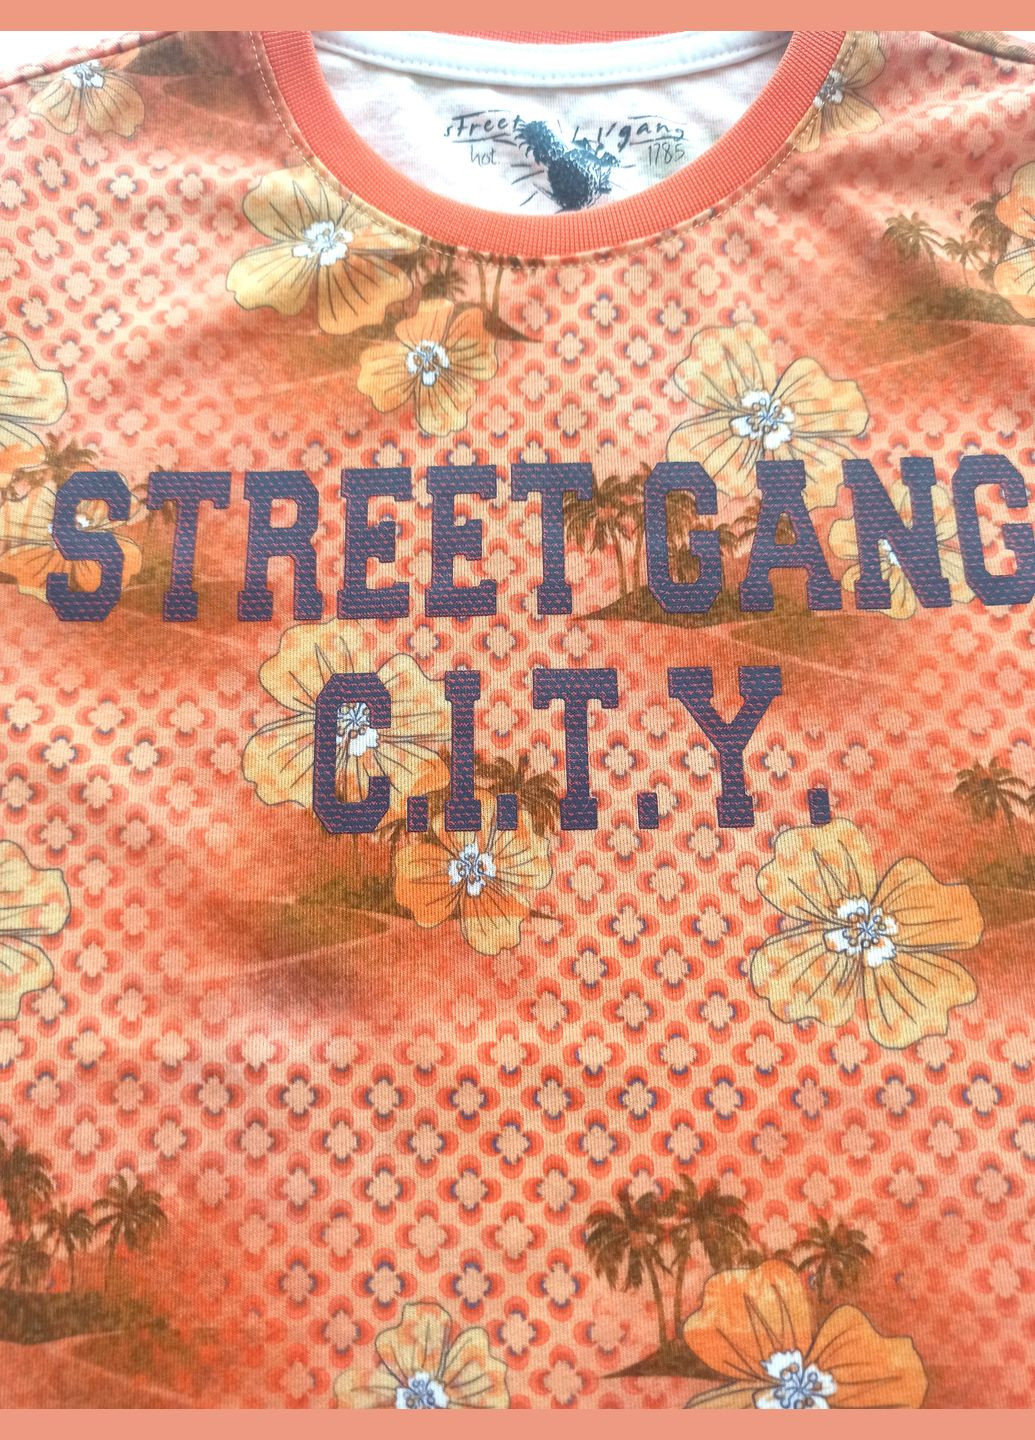 Оранжевая демисезонная футболка для мальчика sg4781 оранжевая 32 (130 см) Street Gang